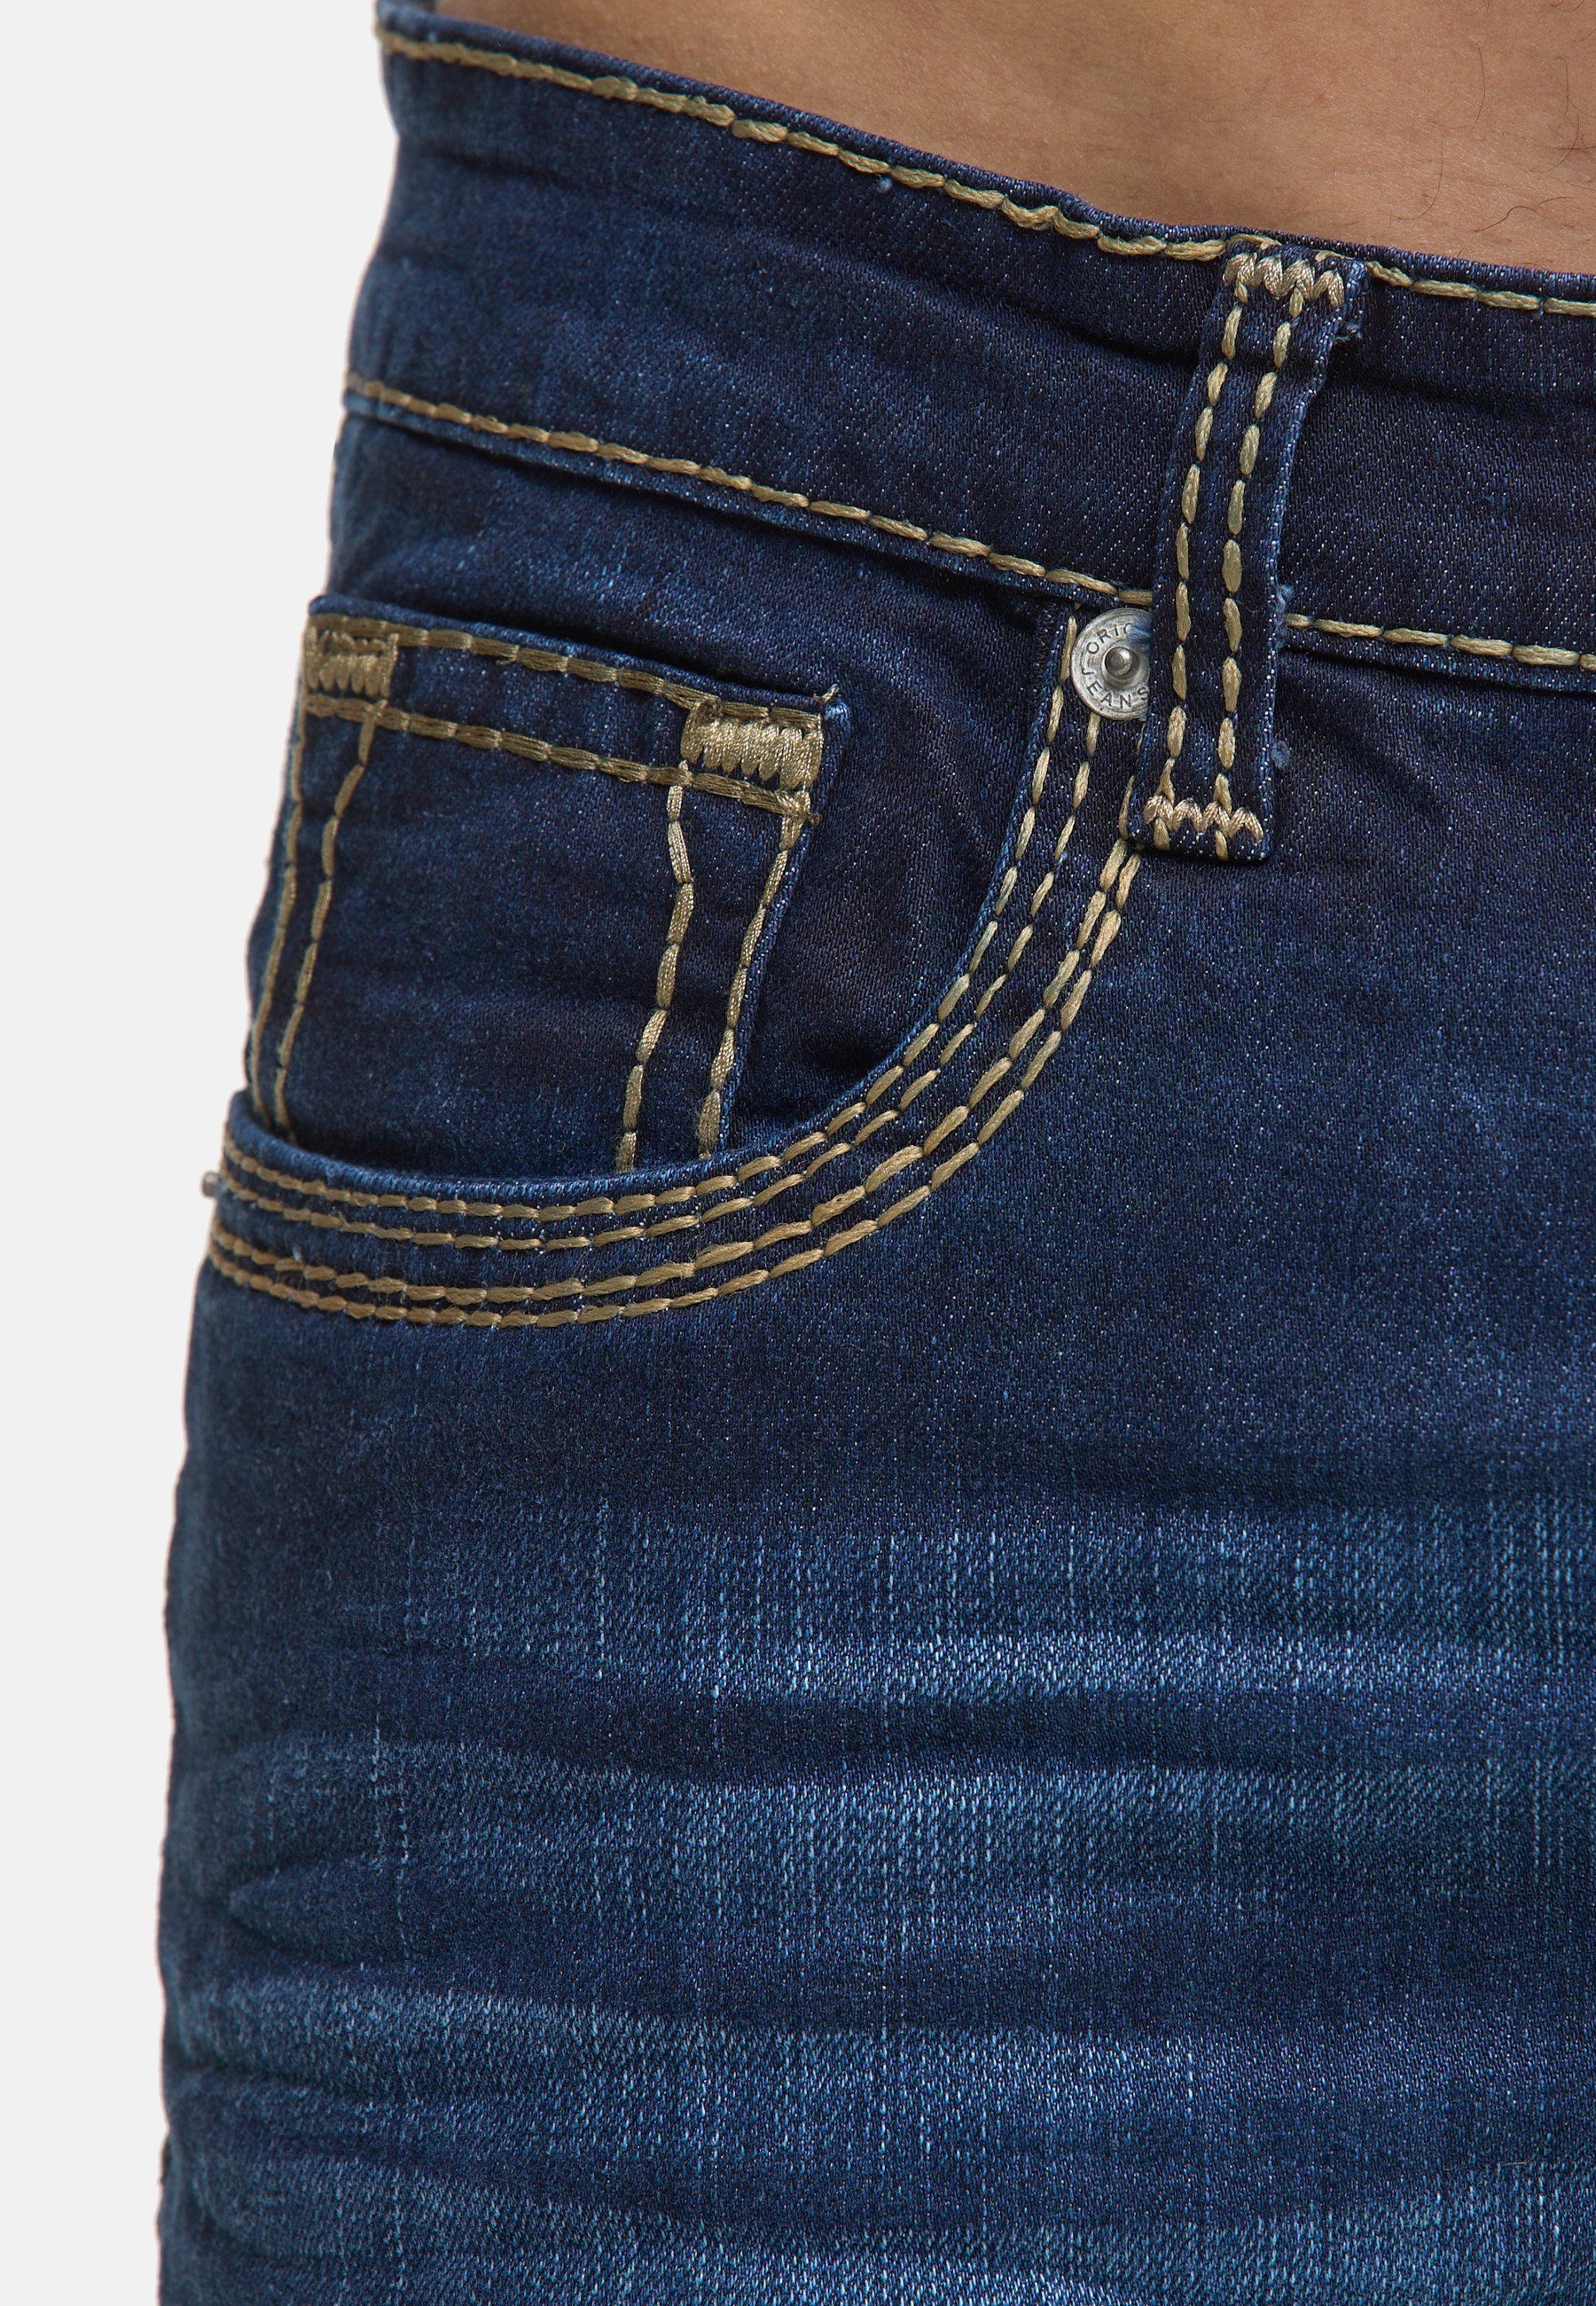 Herren Männer Code47 Pocket 907 Code47 Bootcut Five Regular Hose Denim Jeans Regular-fit-Jeans Fit blue